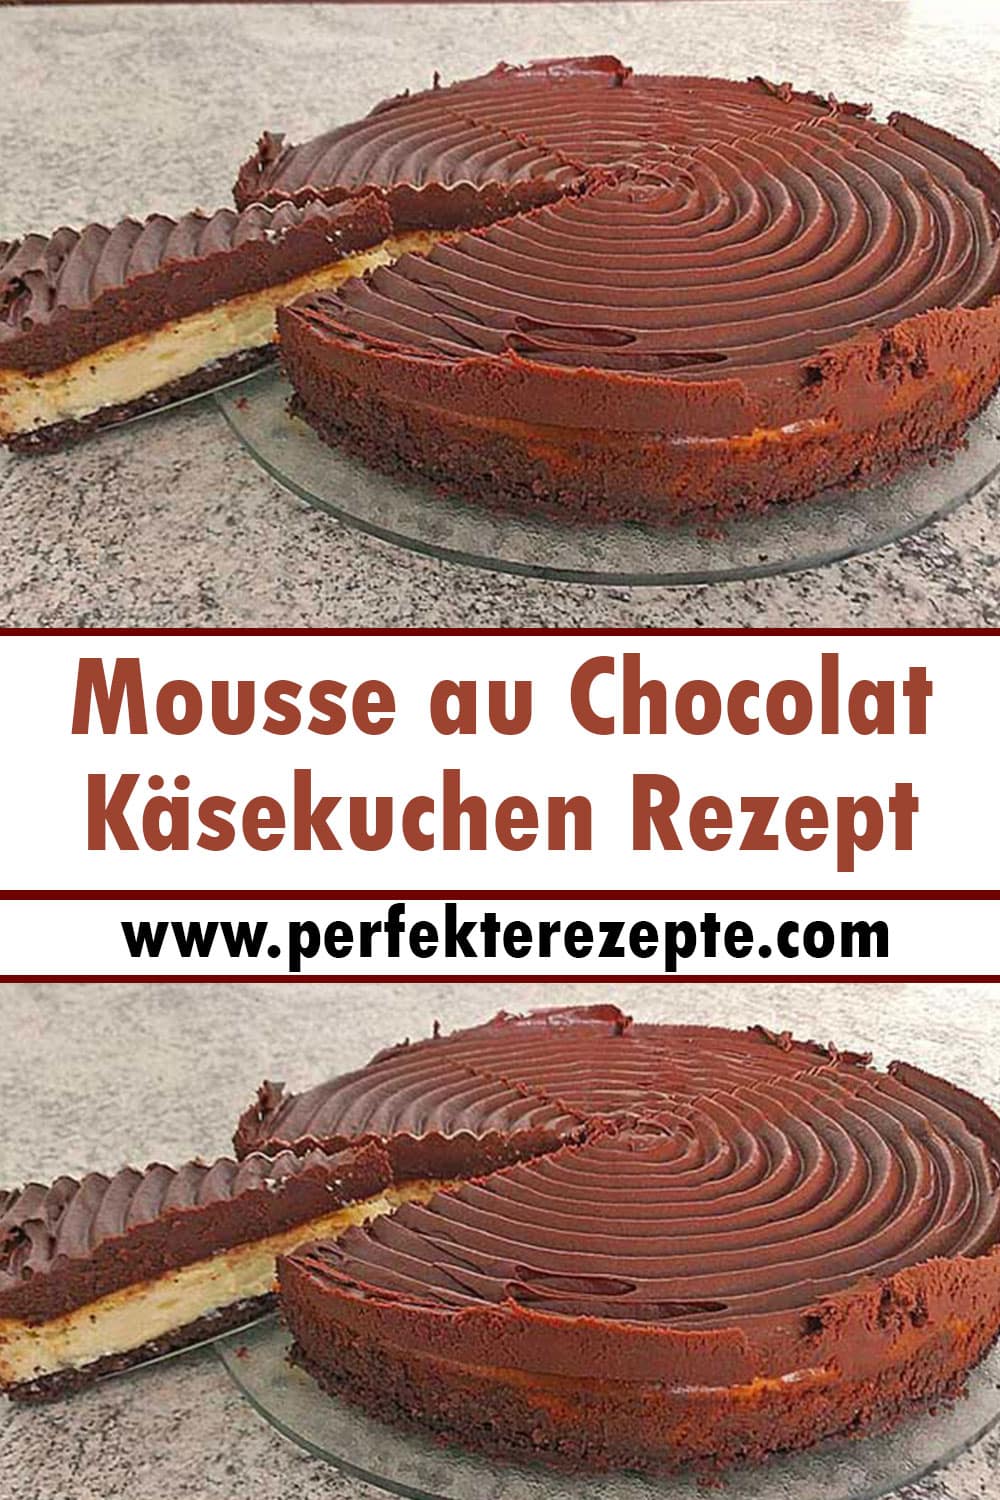 Mousse au Chocolat Käsekuchen Rezept